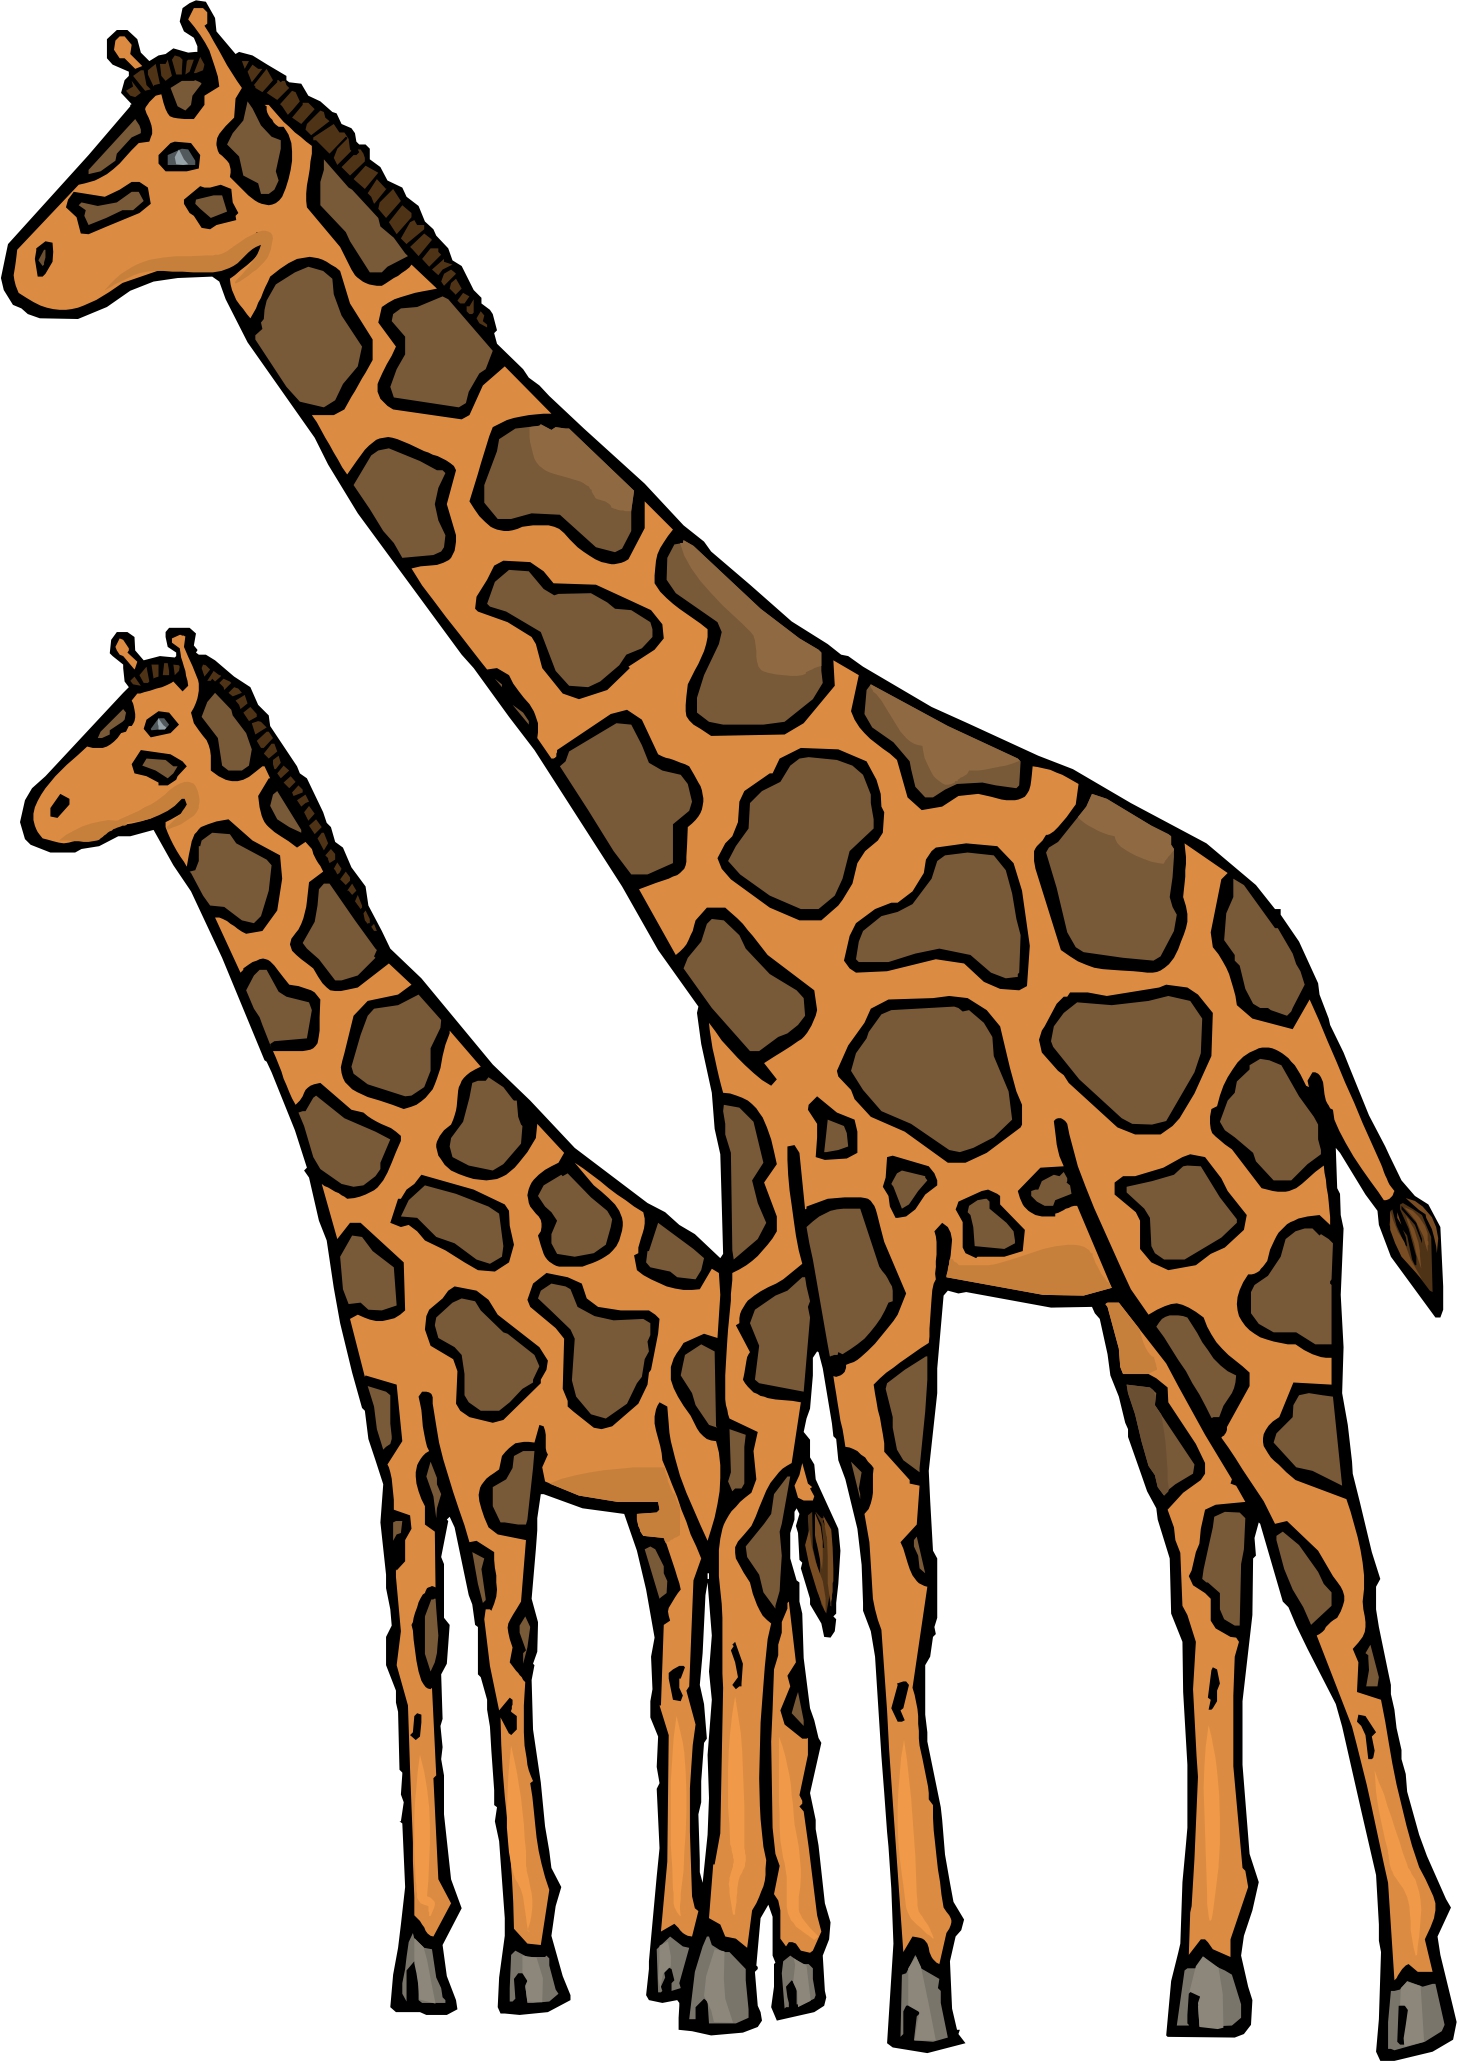 Cartoon Pic Of Giraffe - ClipArt Best